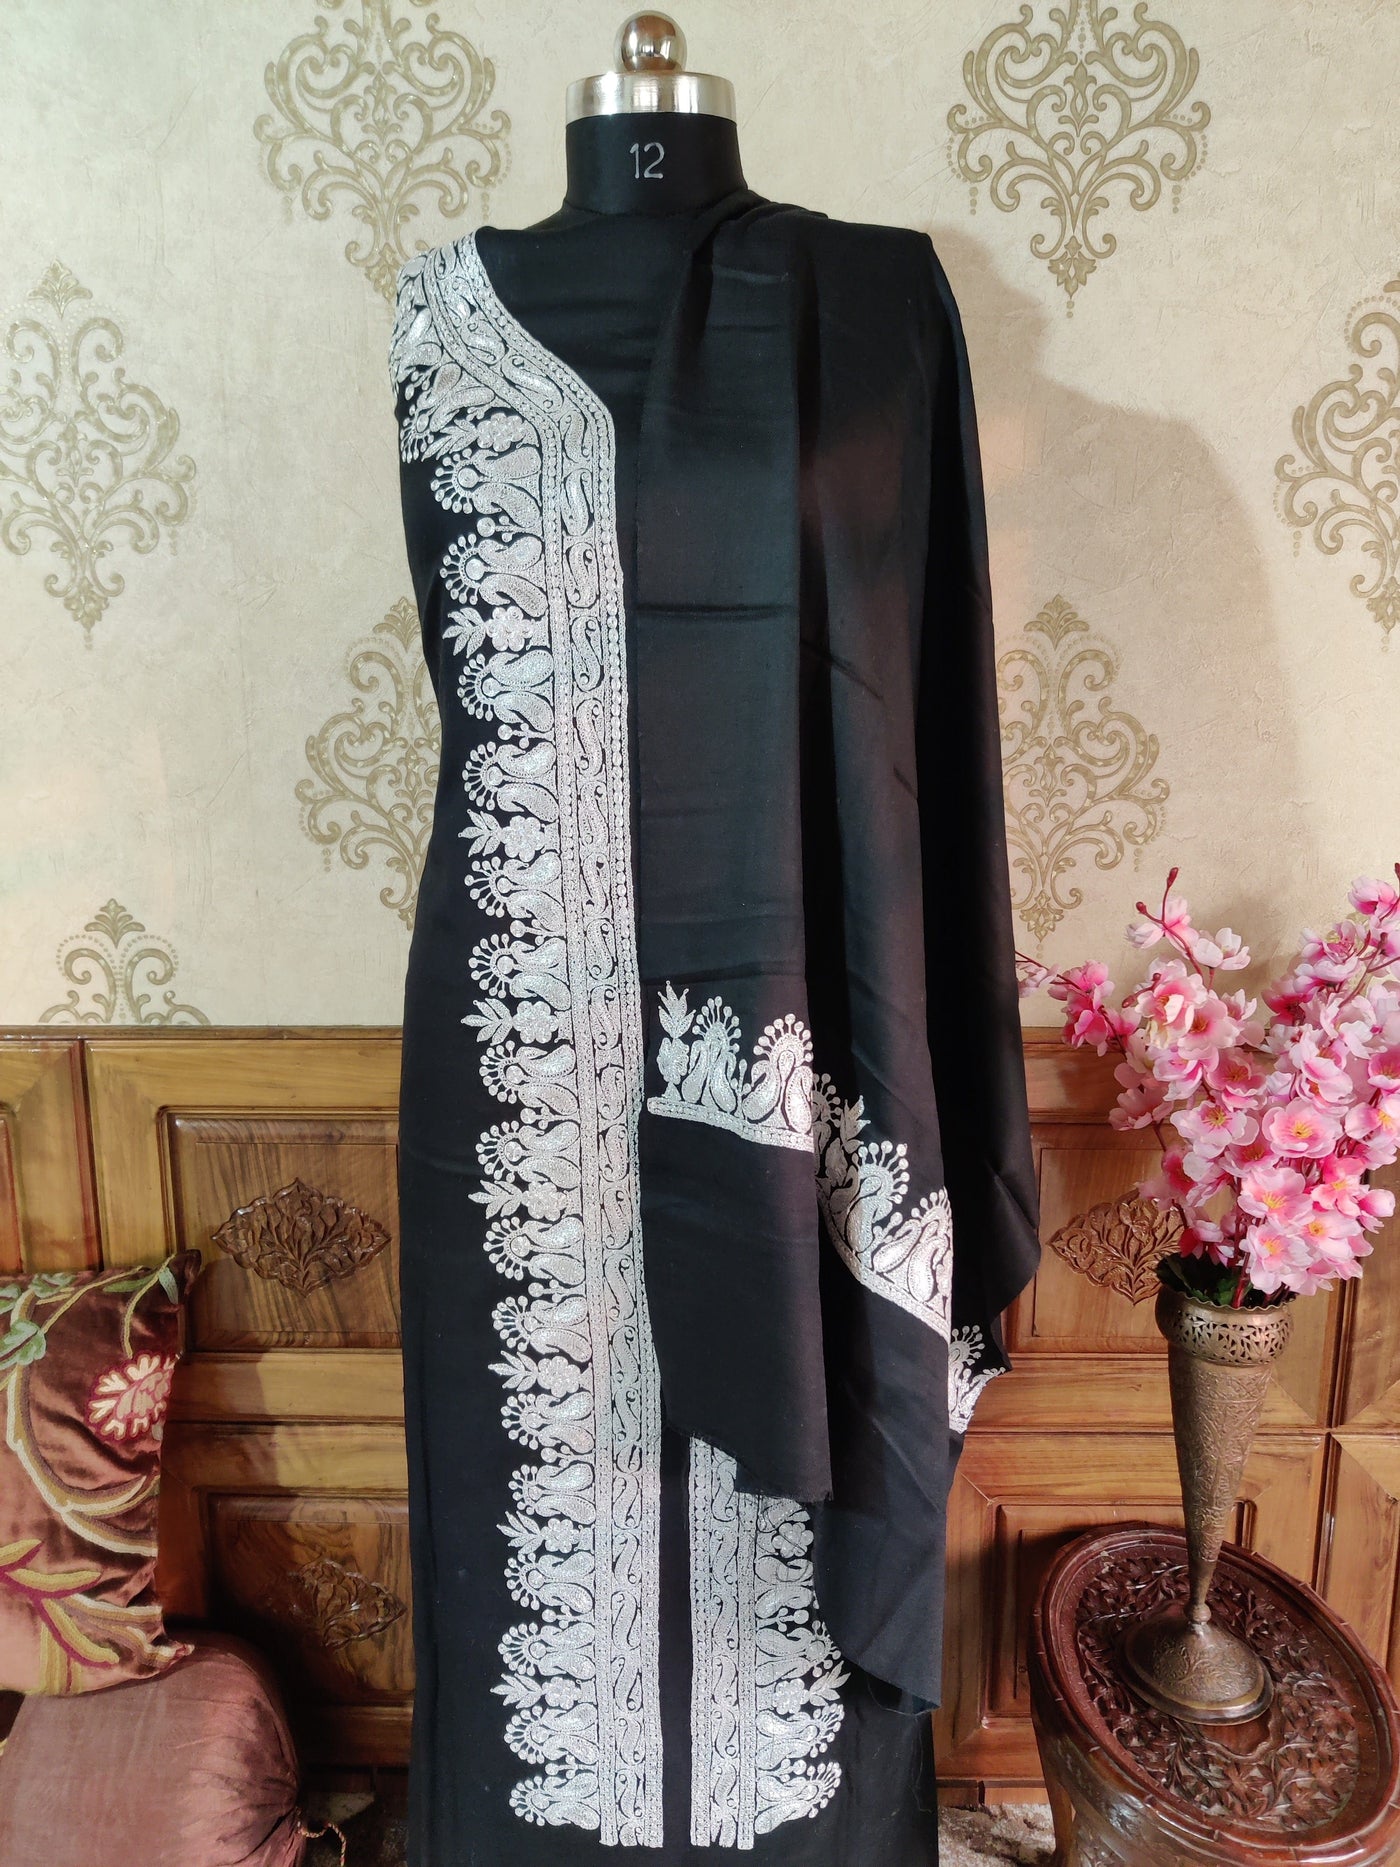 Black Kashmiri Suit Woollen With Tilla Embroidery (3 pcs) Woolen Suit KashmKari Black Kashmiri Woollen Suit With Tilla Embroidery design (3 pcs).  Kashmiri Suit online